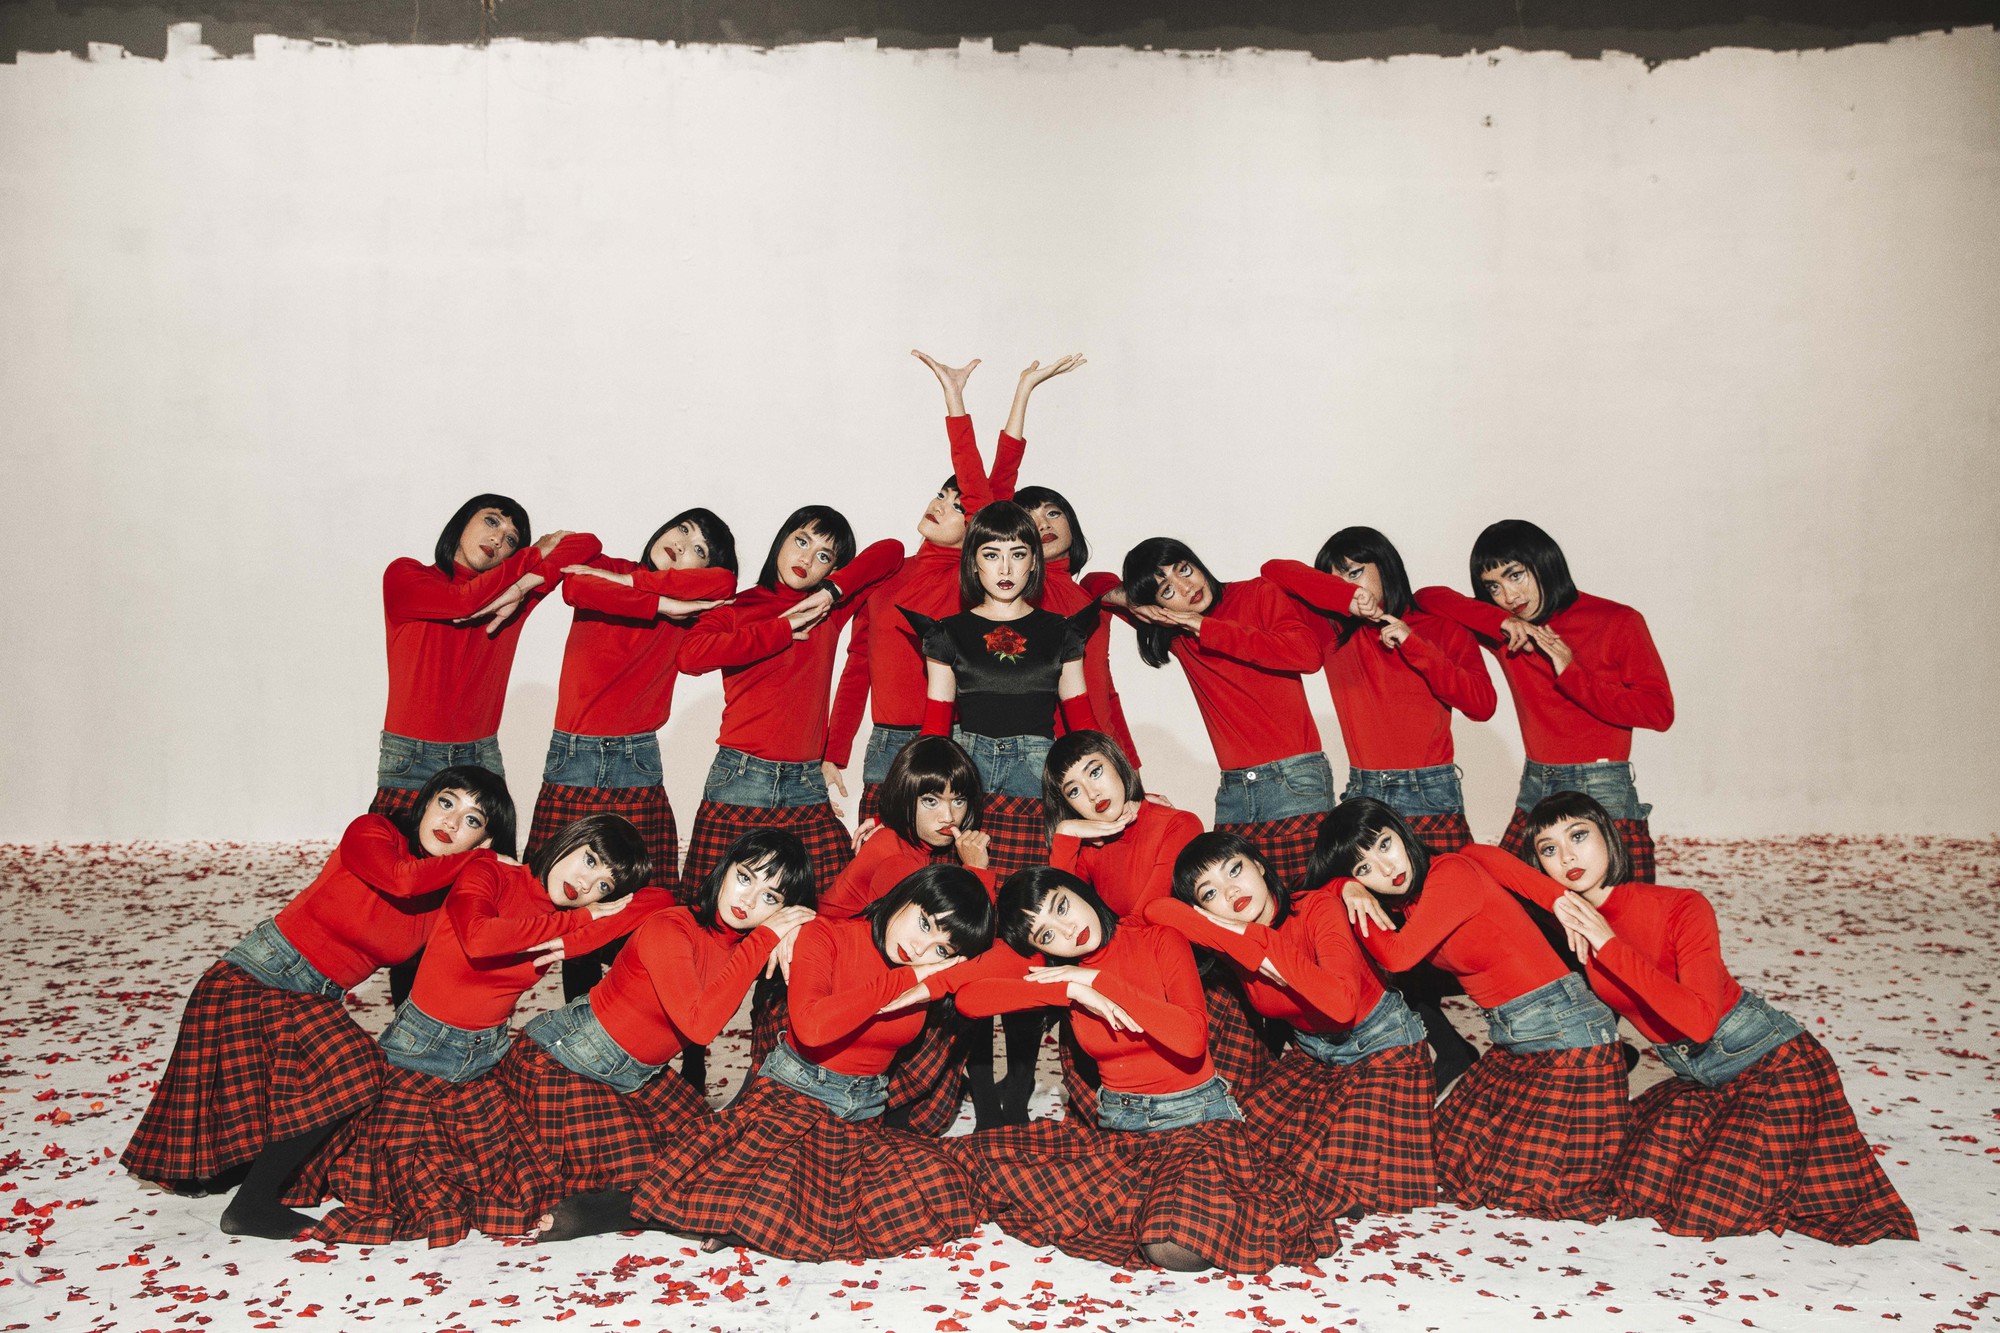 Chi Pu tung MV Dance lạ mắt với vũ đạo độc đáo, thực hiện 2 phiên bản cho sản phẩm trở lại - Ảnh 11.